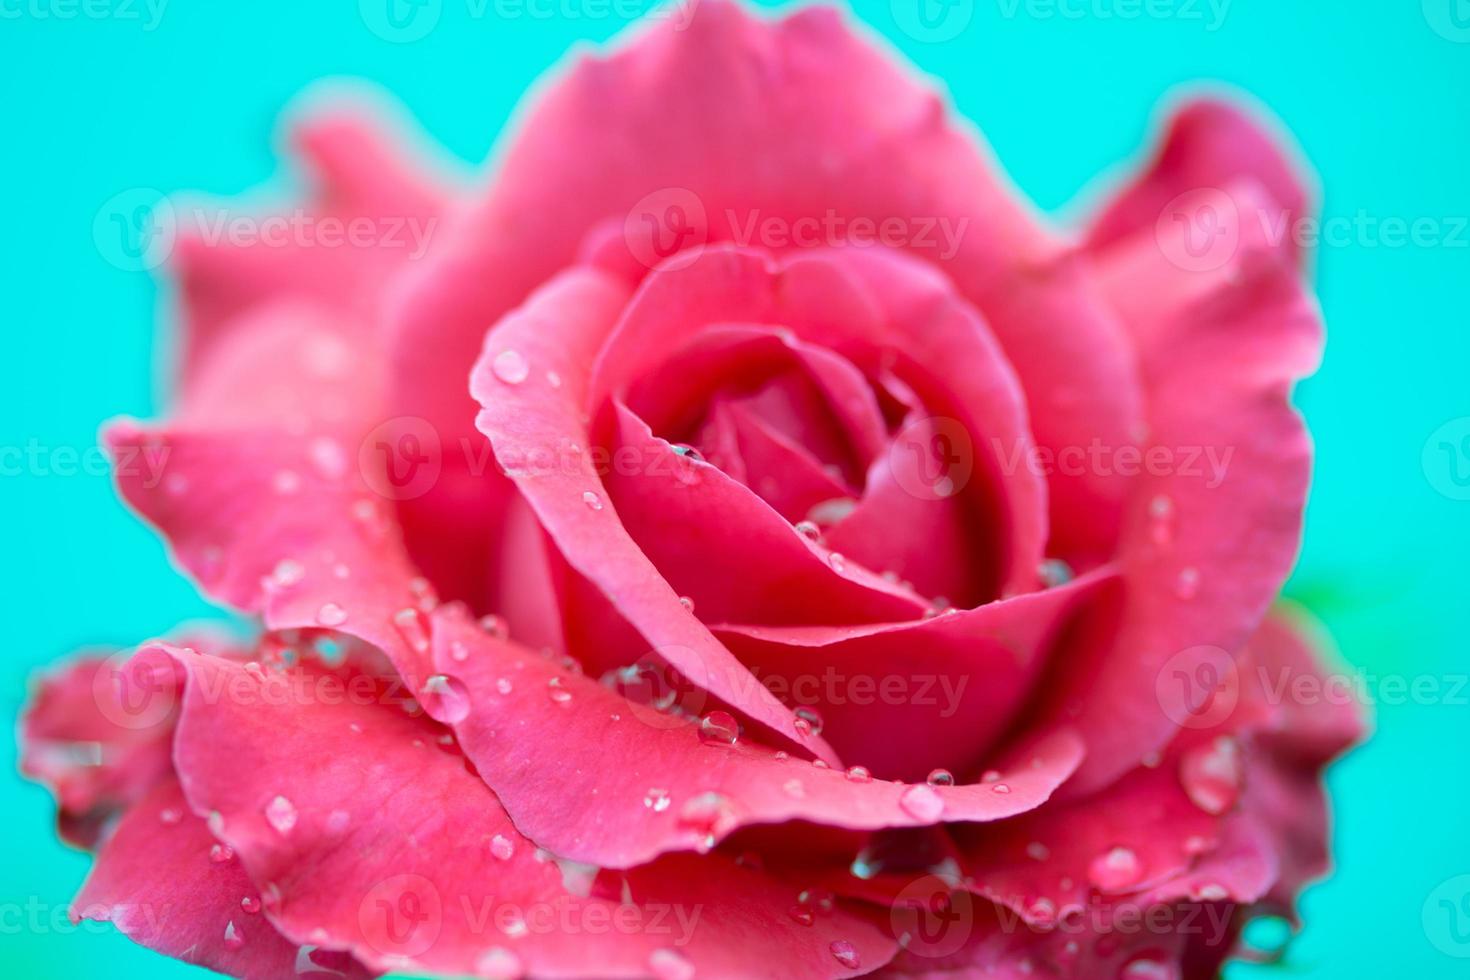 primo piano di una rosa rossa con gocce d'acqua foto